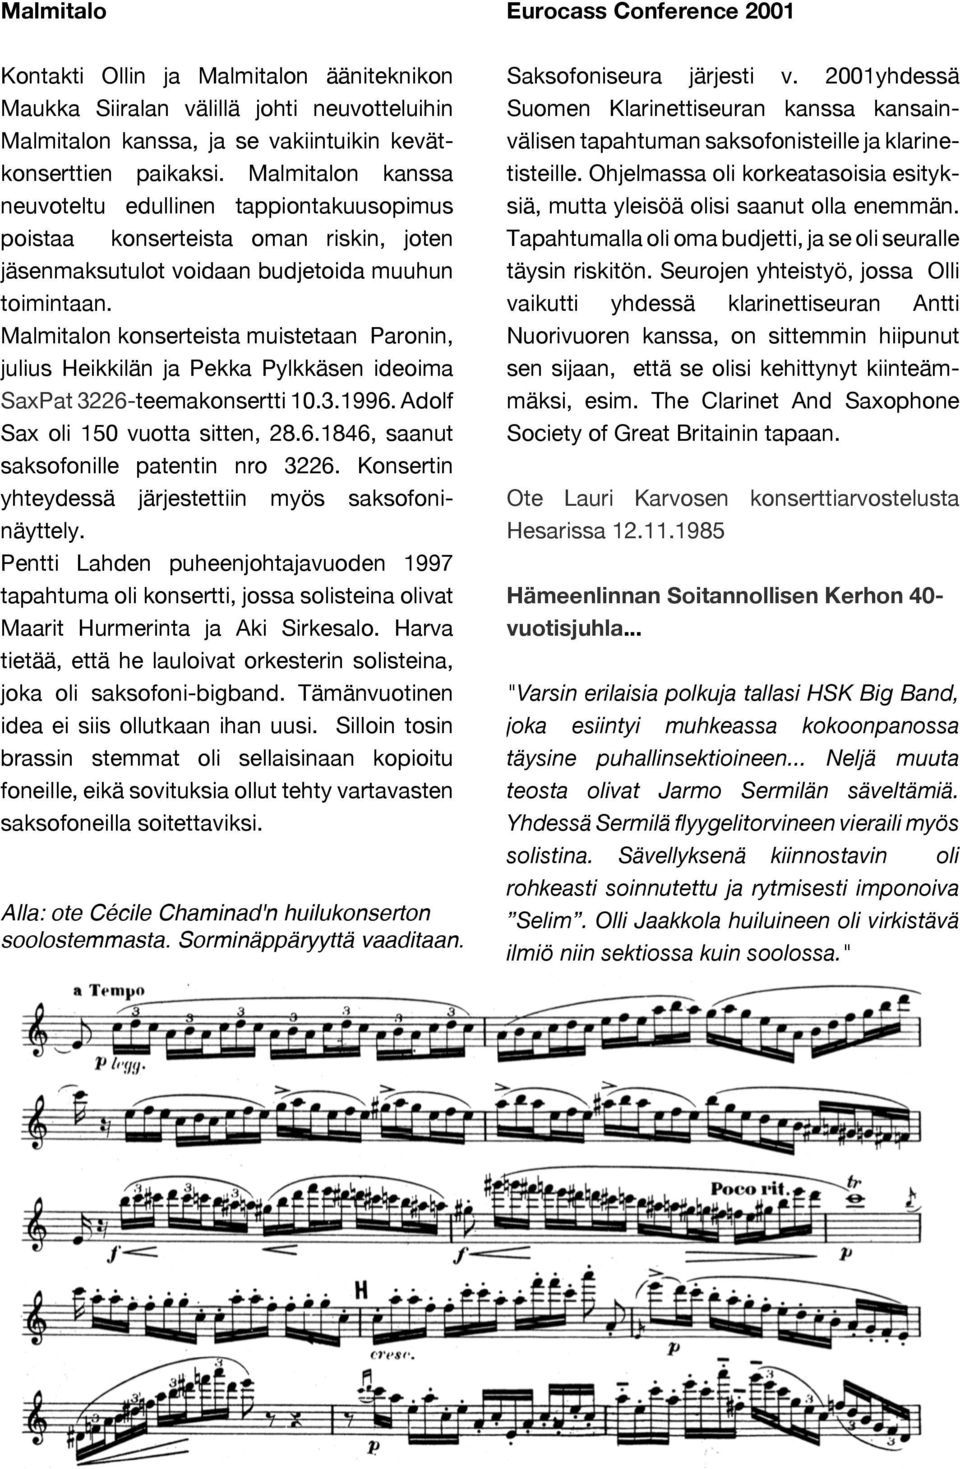 Malmitalon konserteista muistetaan Paronin, julius Heikkilän ja Pekka Pylkkäsen ideoima SaxPat 3226-teemakonsertti 10.3.1996. Adolf Sax oli 150 vuotta sitten, 28.6.1846, saanut saksofonille patentin nro 3226.